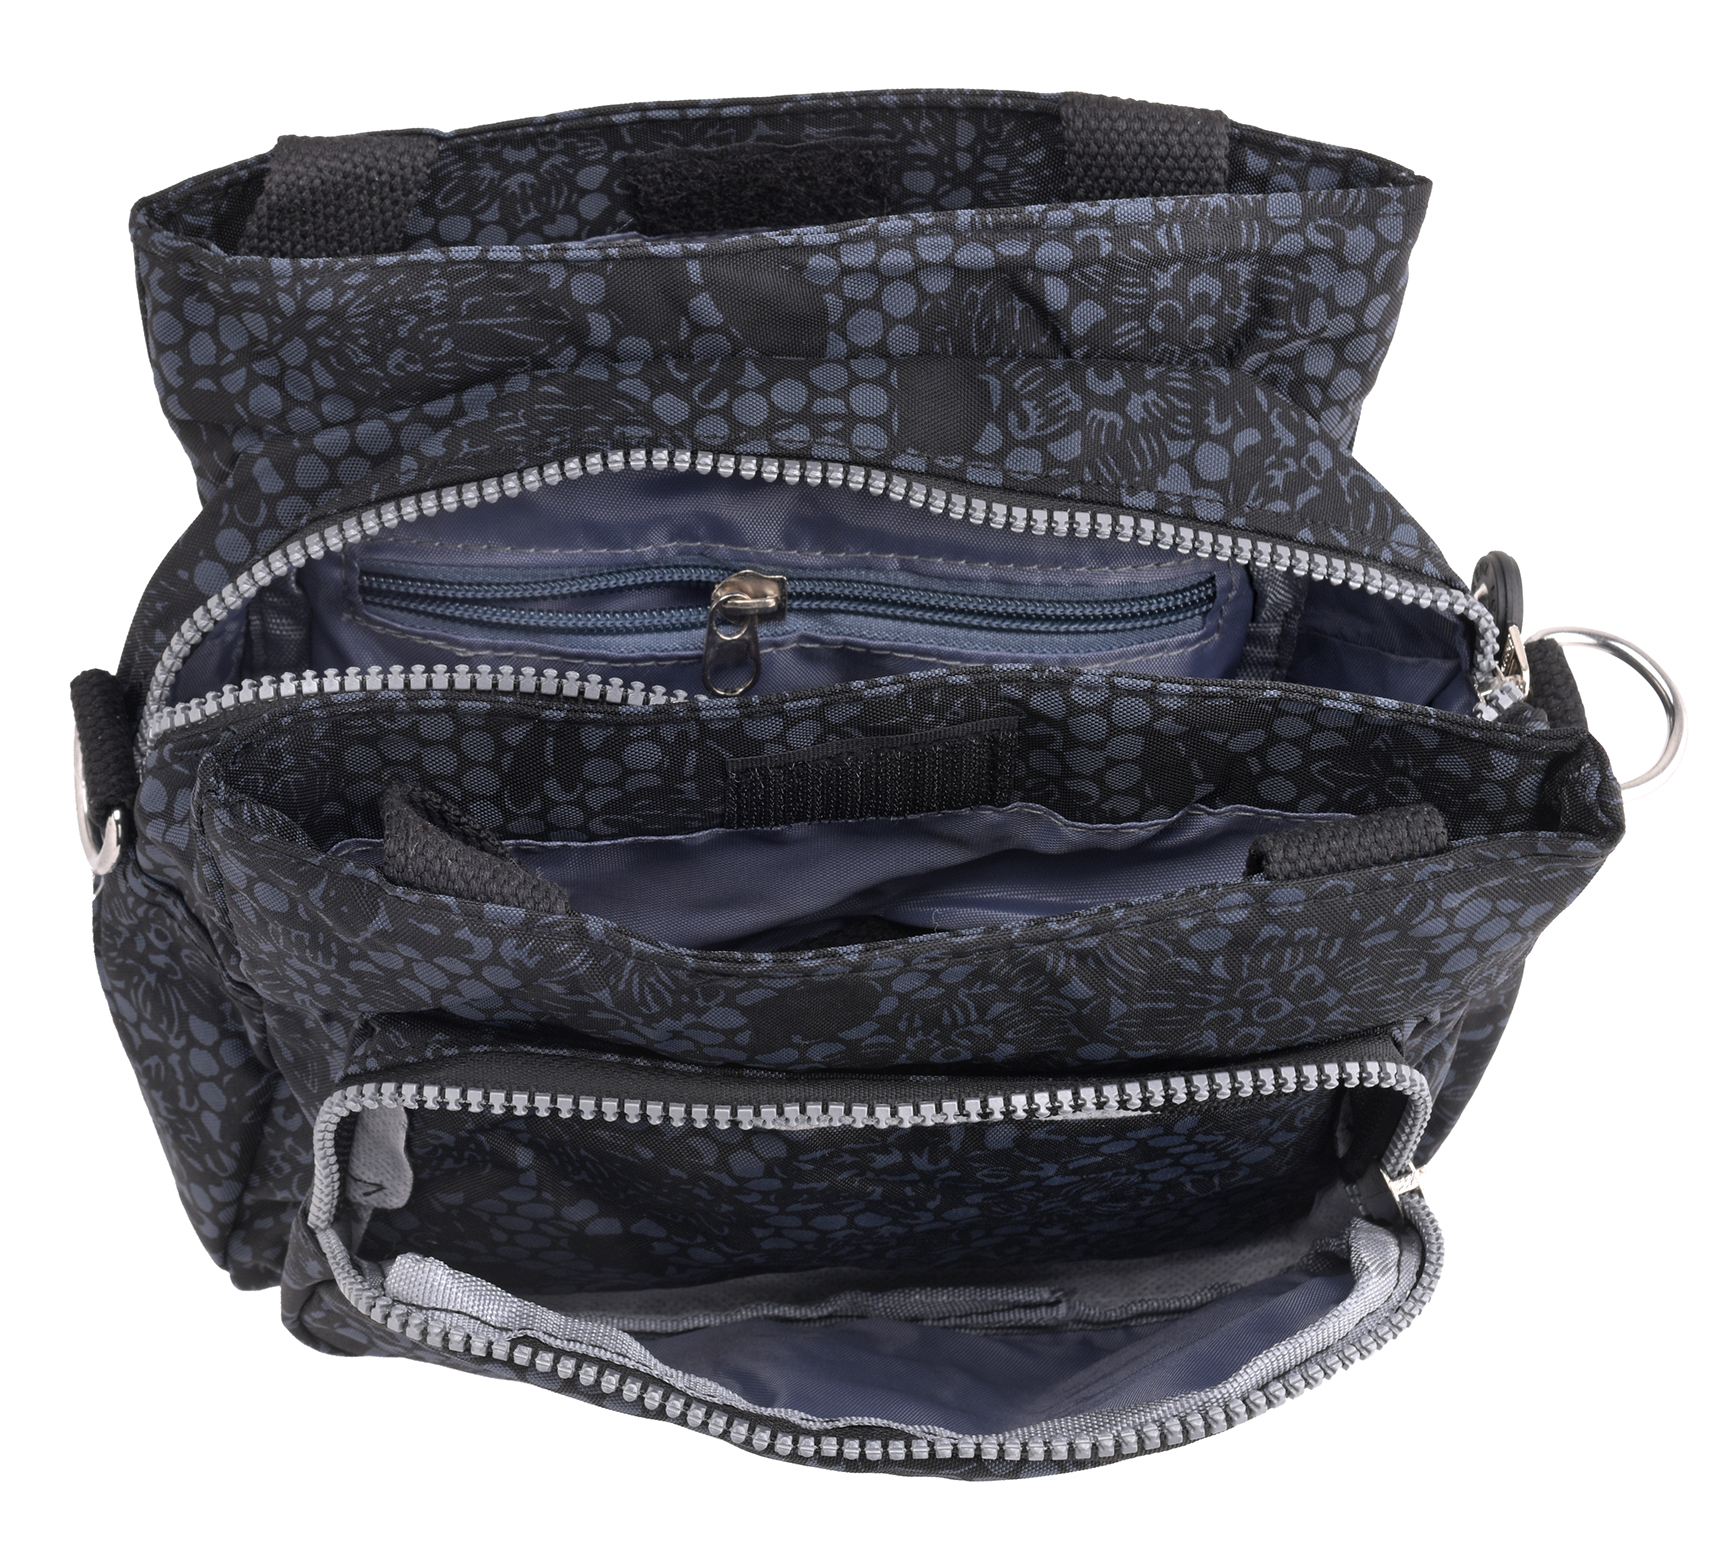 Ladies Assorted Pattern Lightweight Handbag Detachable Shoulder Strap Fairfax | eBay